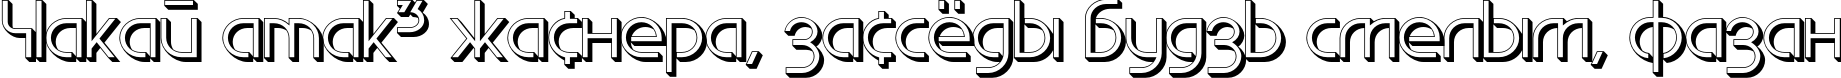 Пример написания шрифтом EdgeLineShadow текста на белорусском